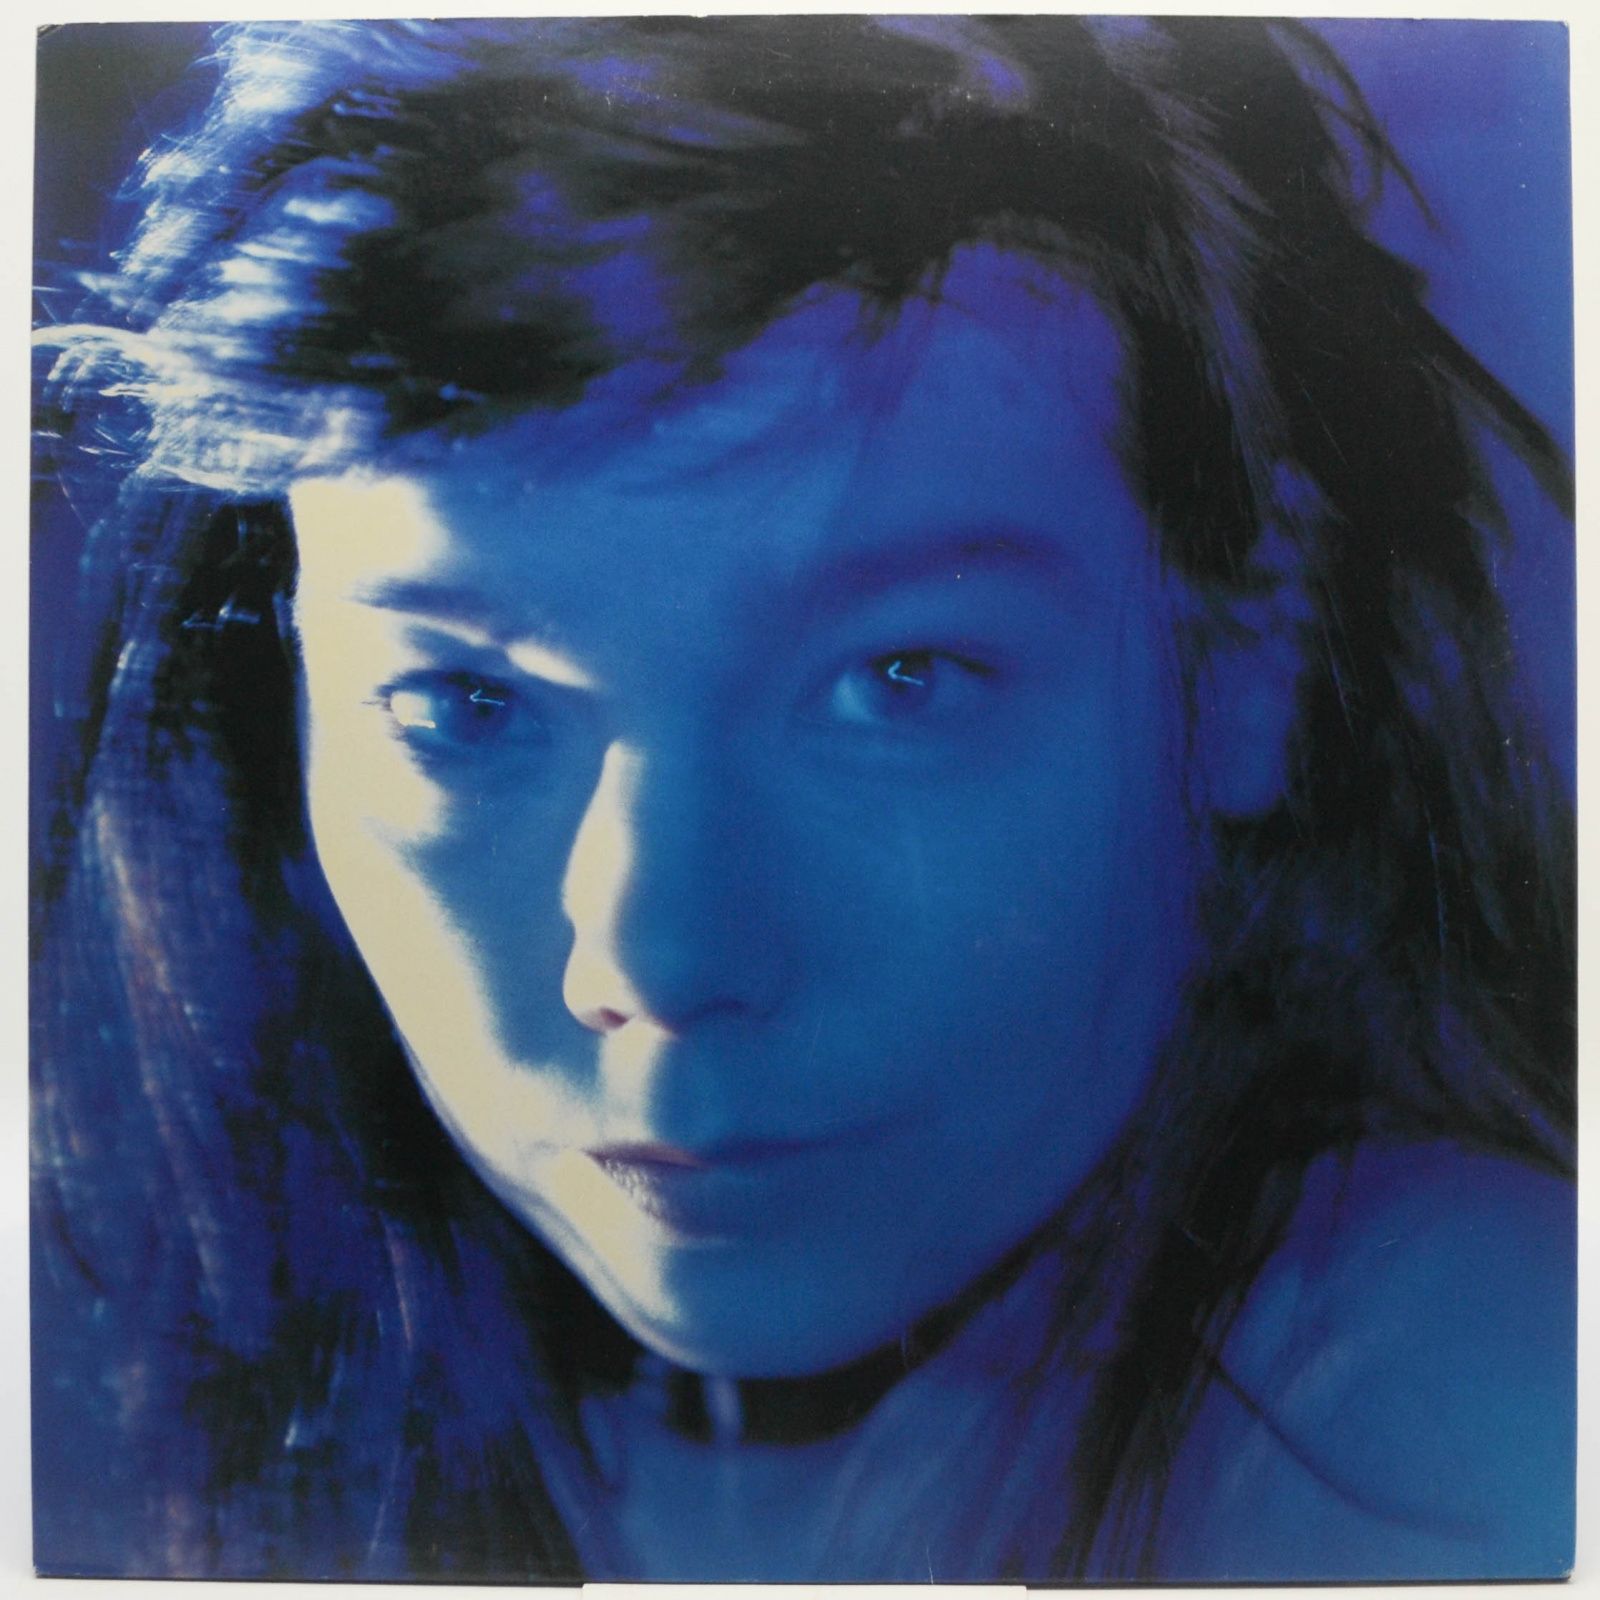 Björk — Telegram, 1997